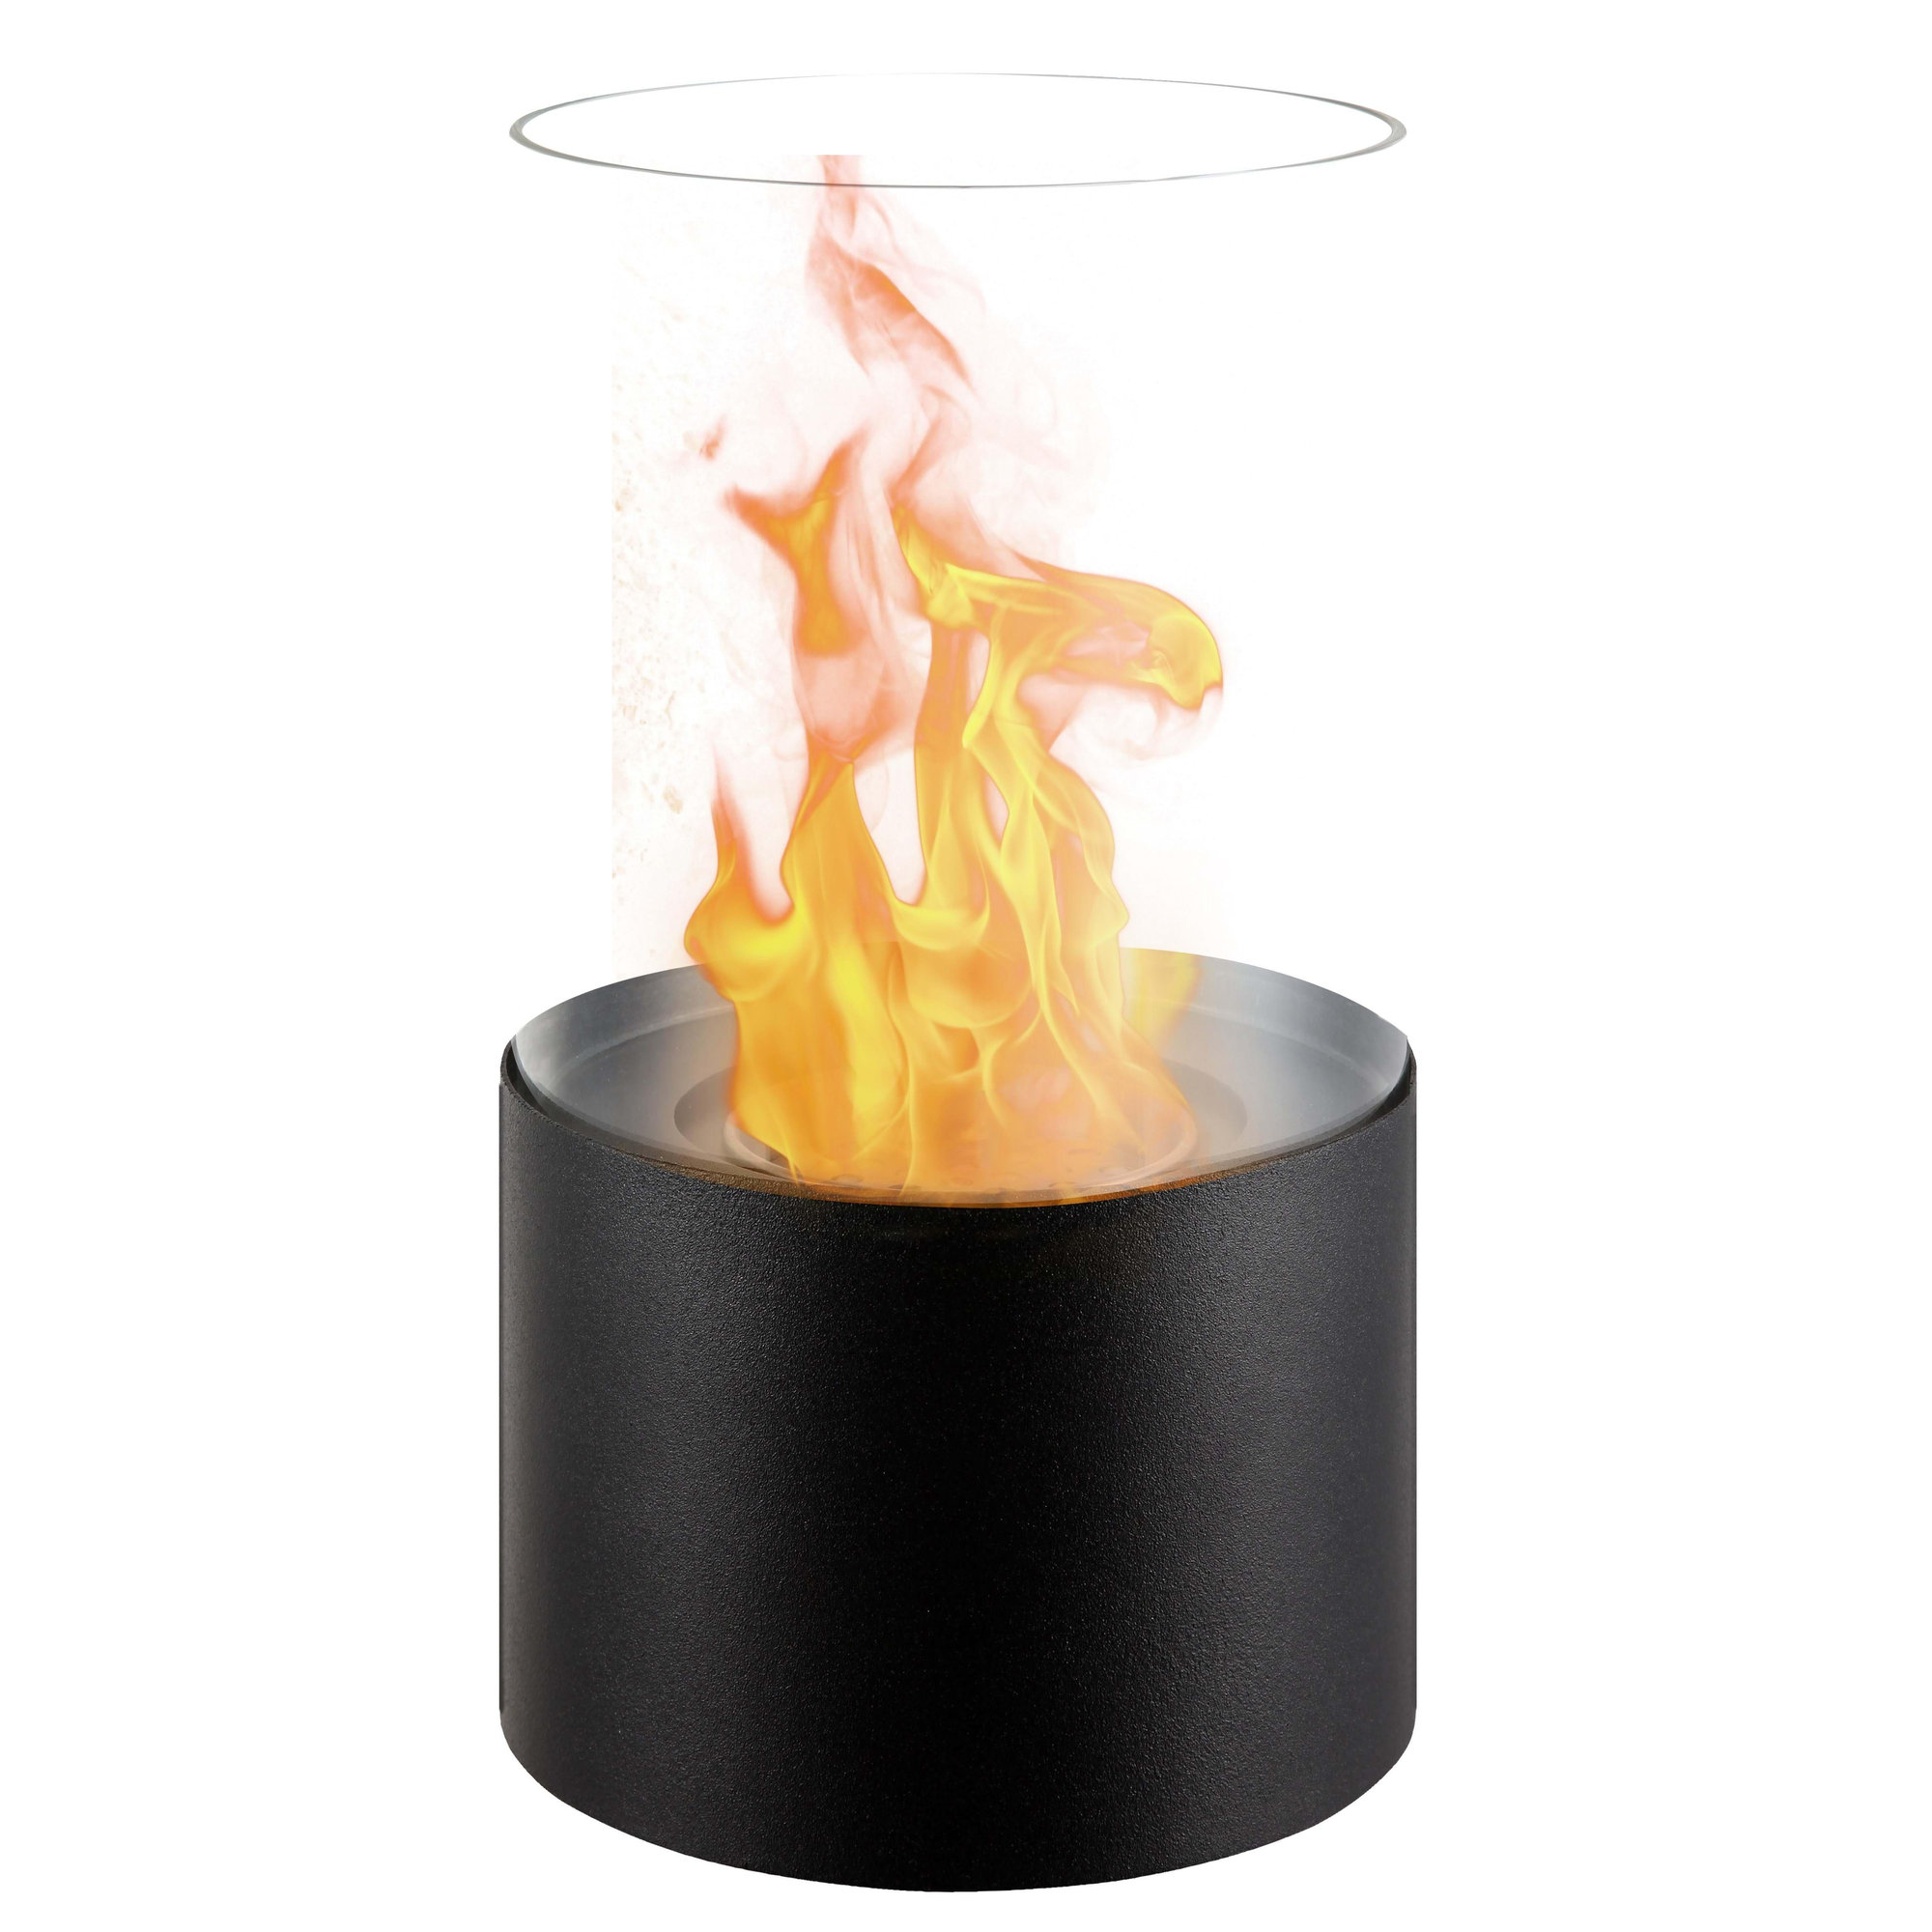 Qlima cheminée bio ethanol modèle de table verre noir - 8713508775906 